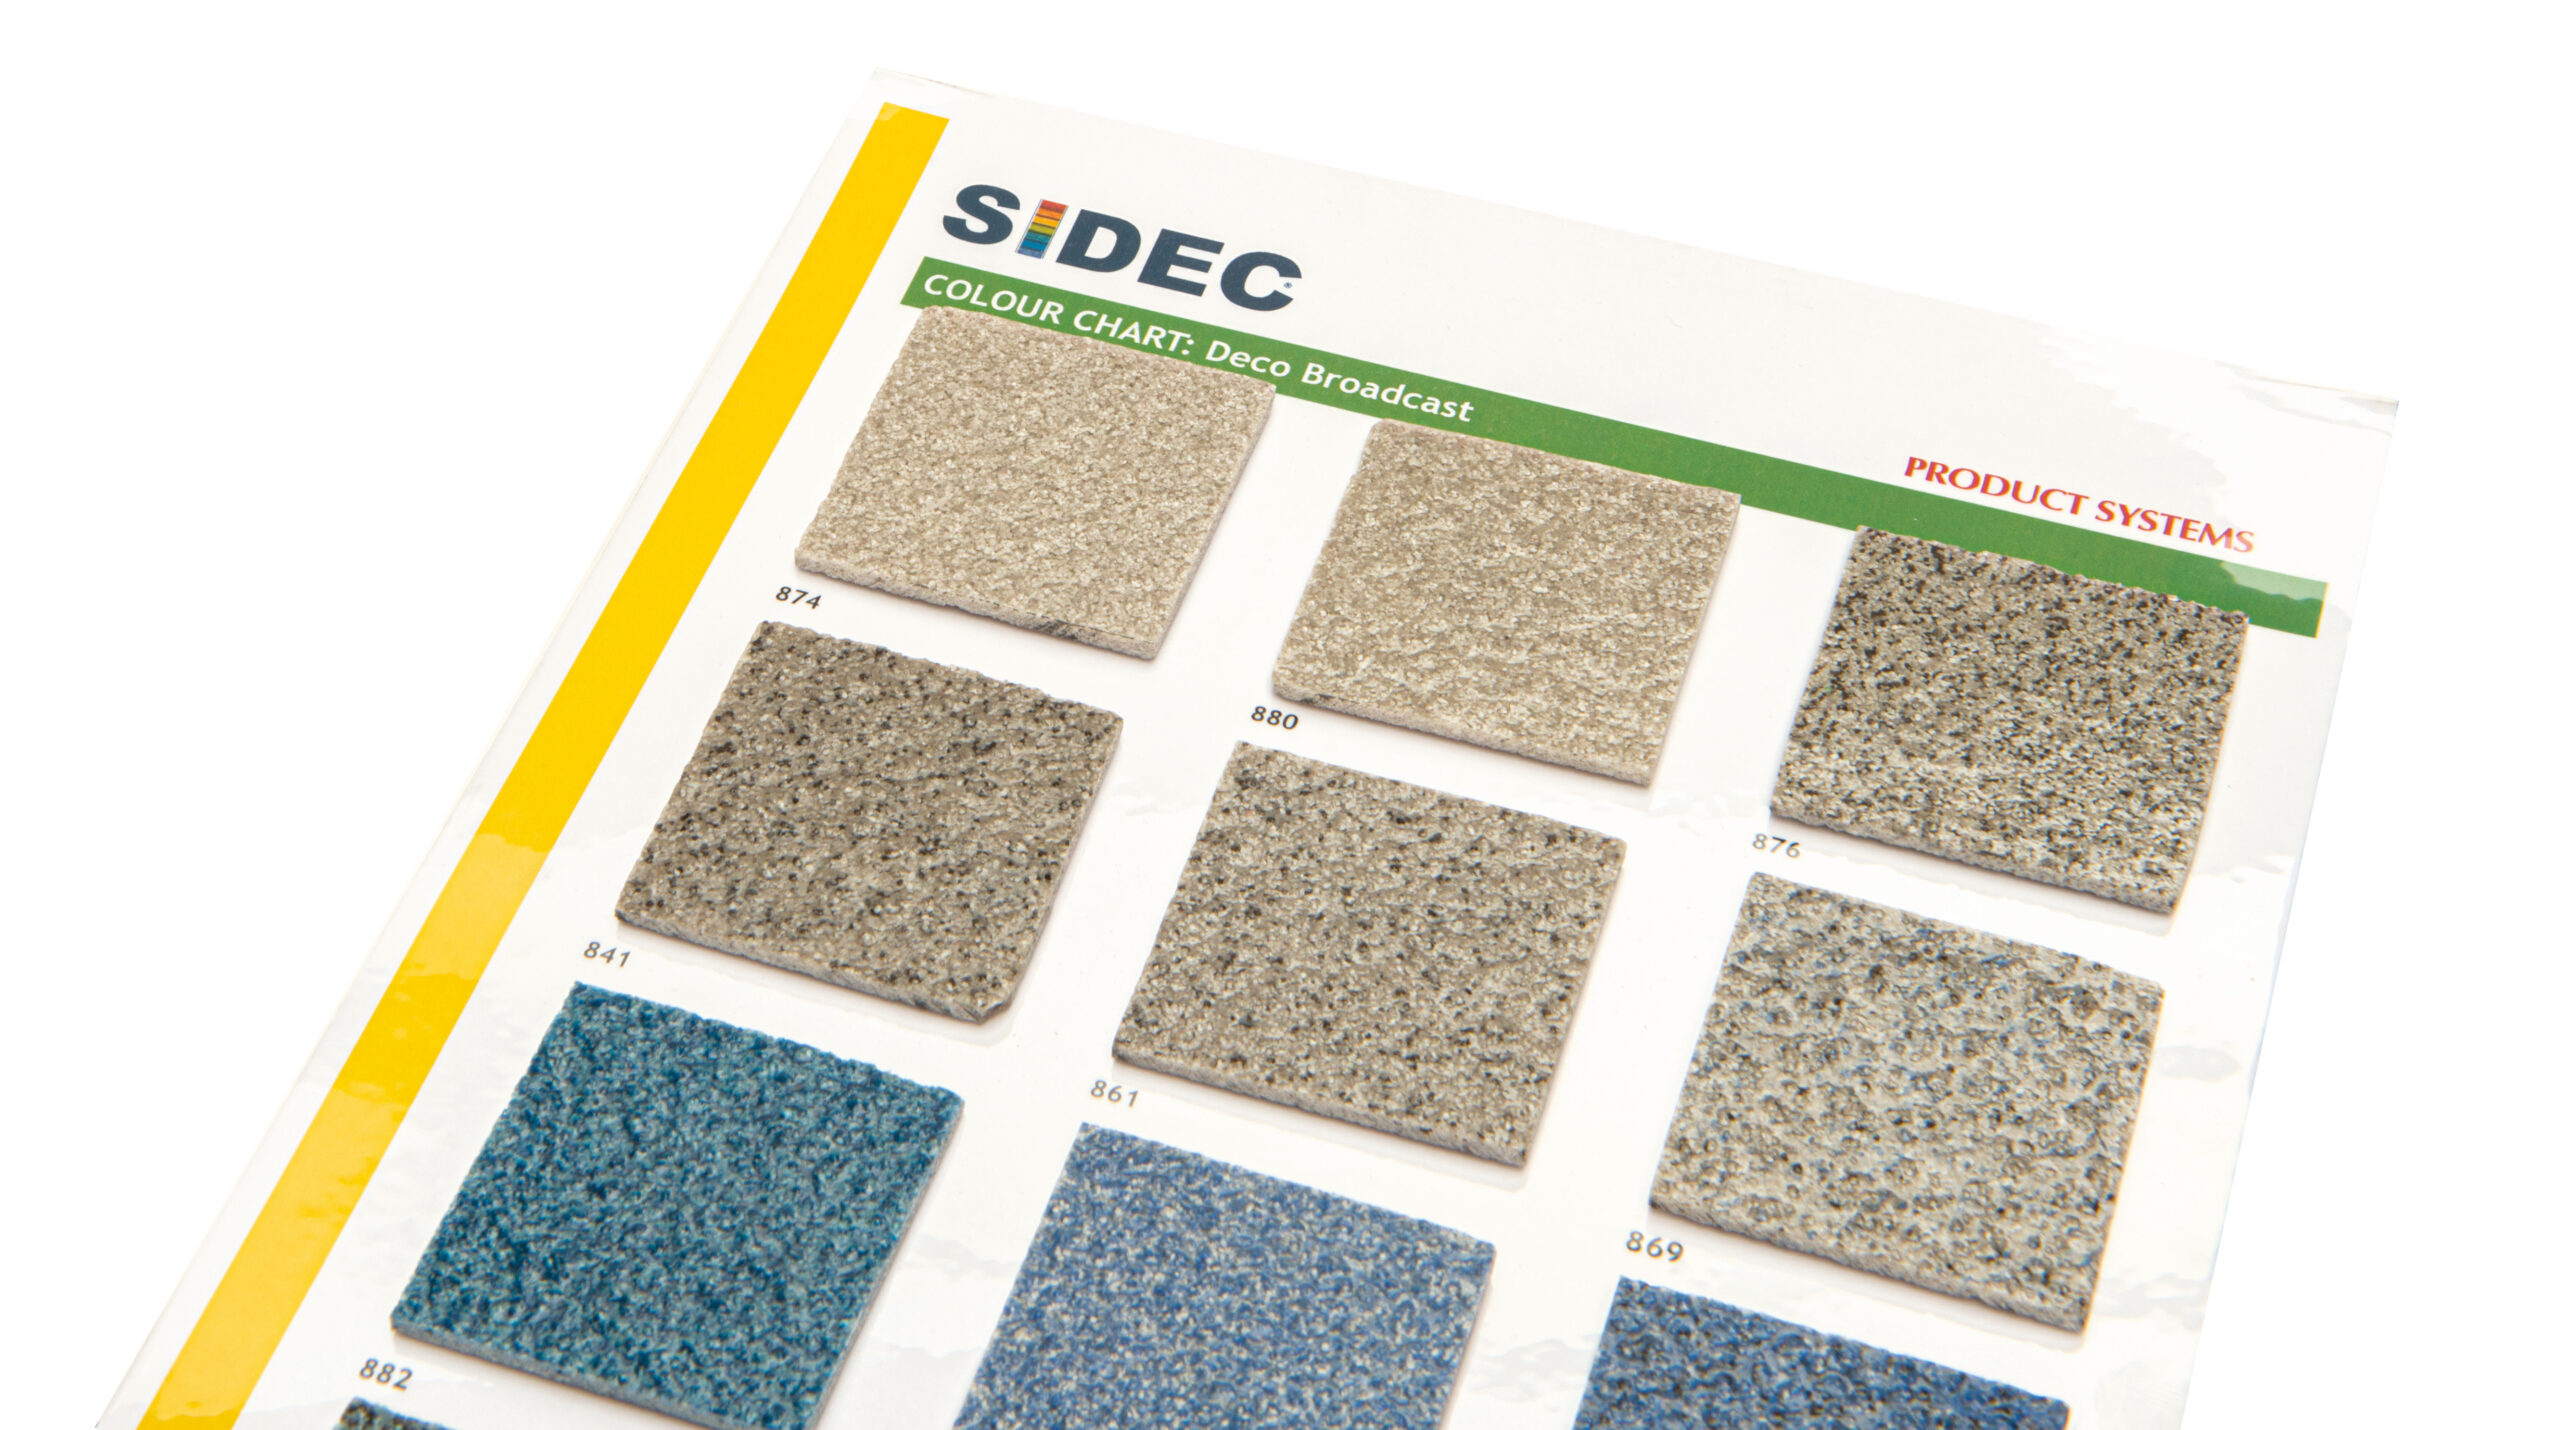 Sidec-Colour Chart_Deco Broadcast_grijs-blauw tinten-detail